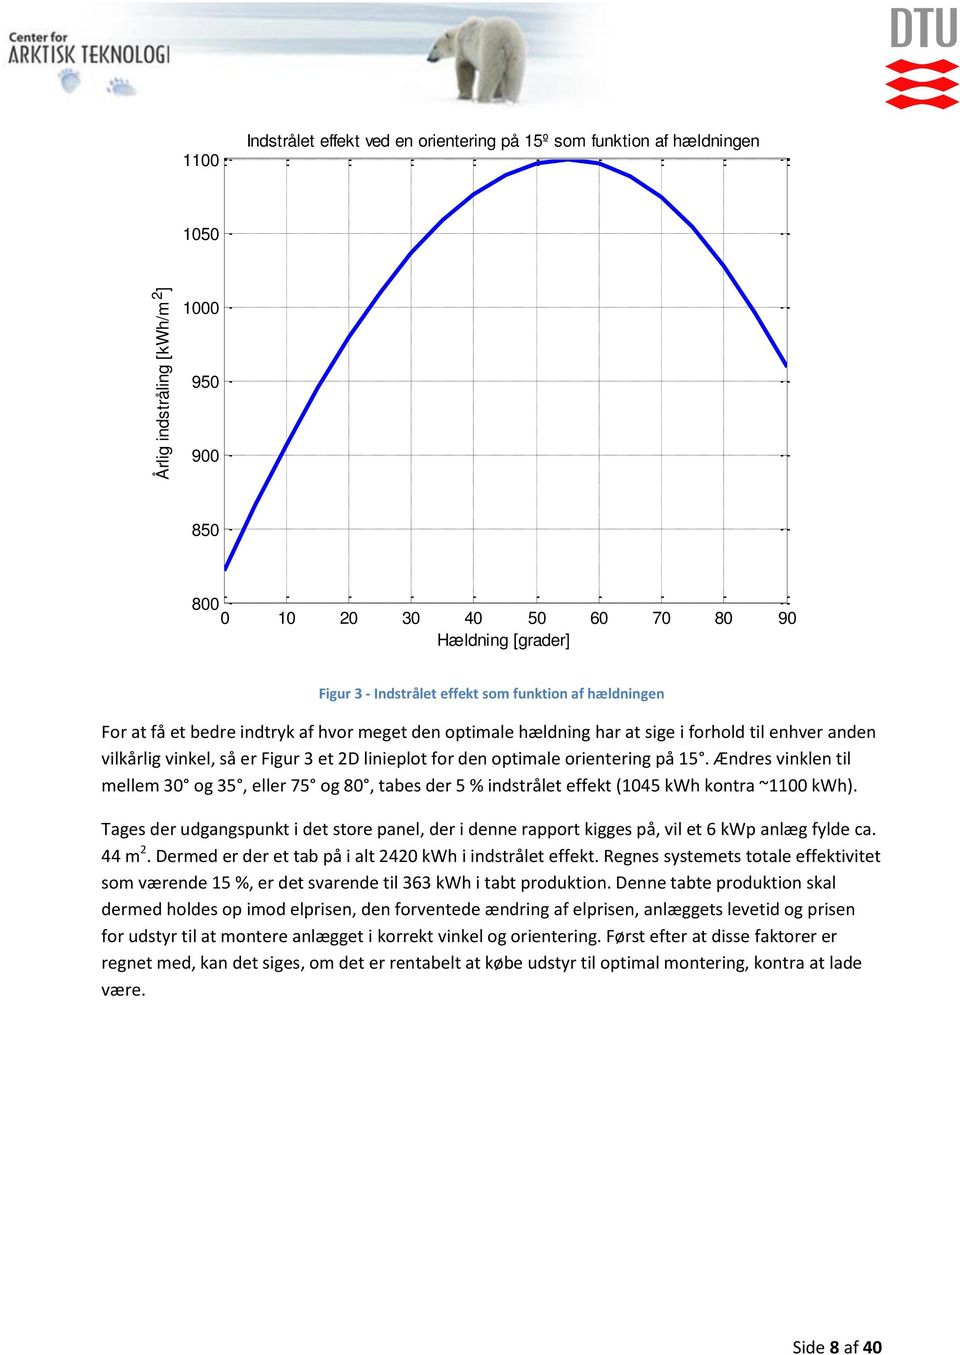 optimale orientering på 15. Ændres vinklen til mellem 30 og 35, eller 75 og 80, tabes der 5 % indstrålet effekt (1045 kwh kontra ~1100 kwh).